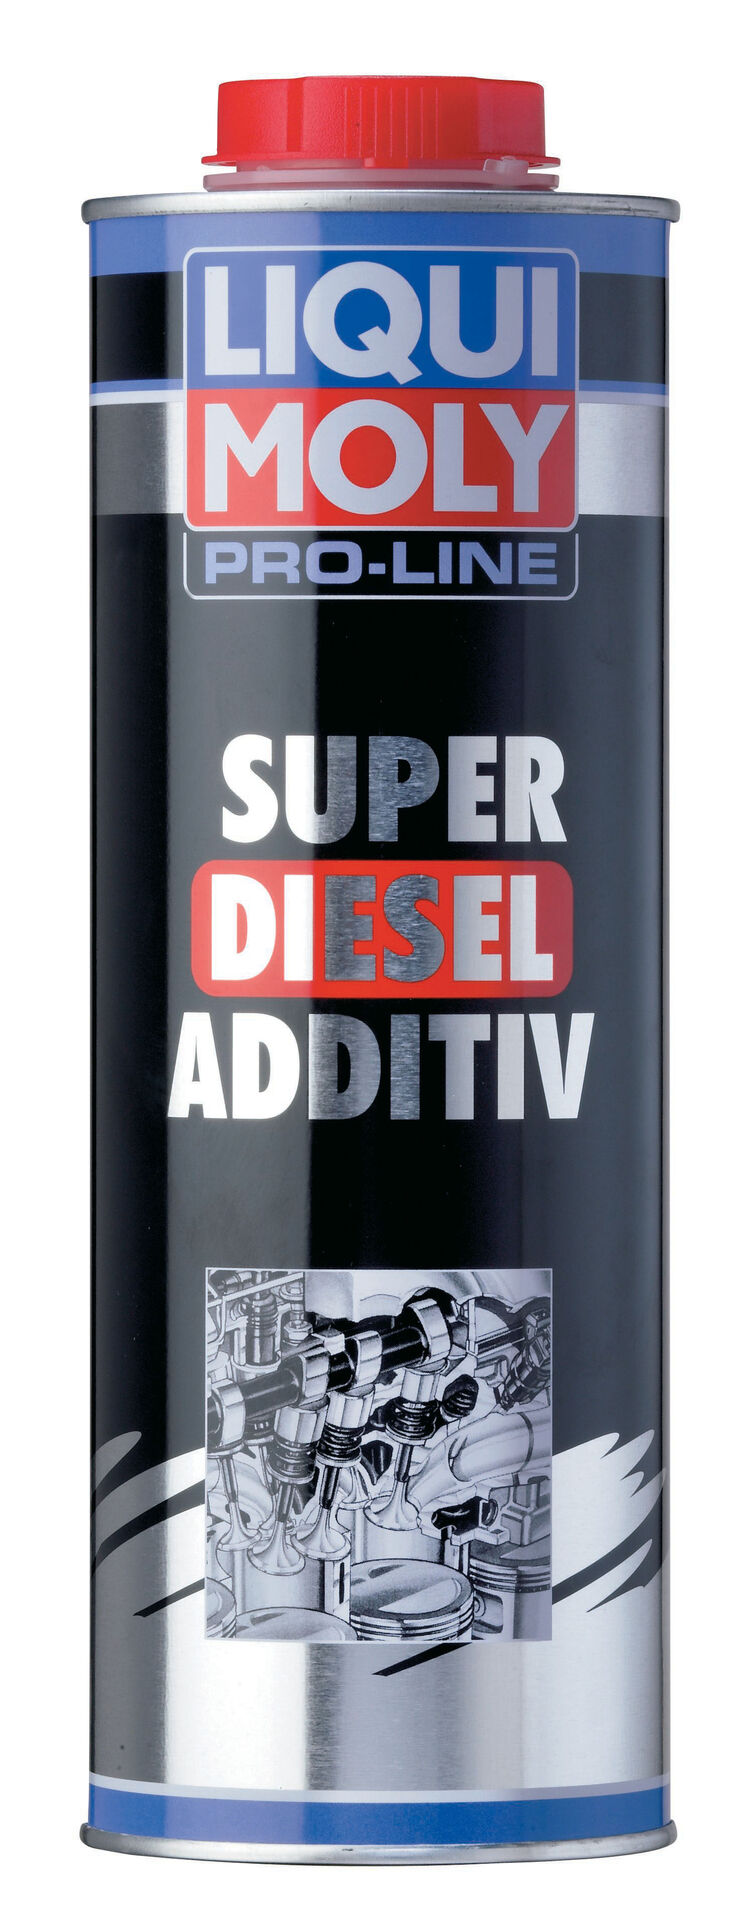  LIQUI MOLY 5176 Pro Line Super Diesel Additiv Dose Blech 1 l